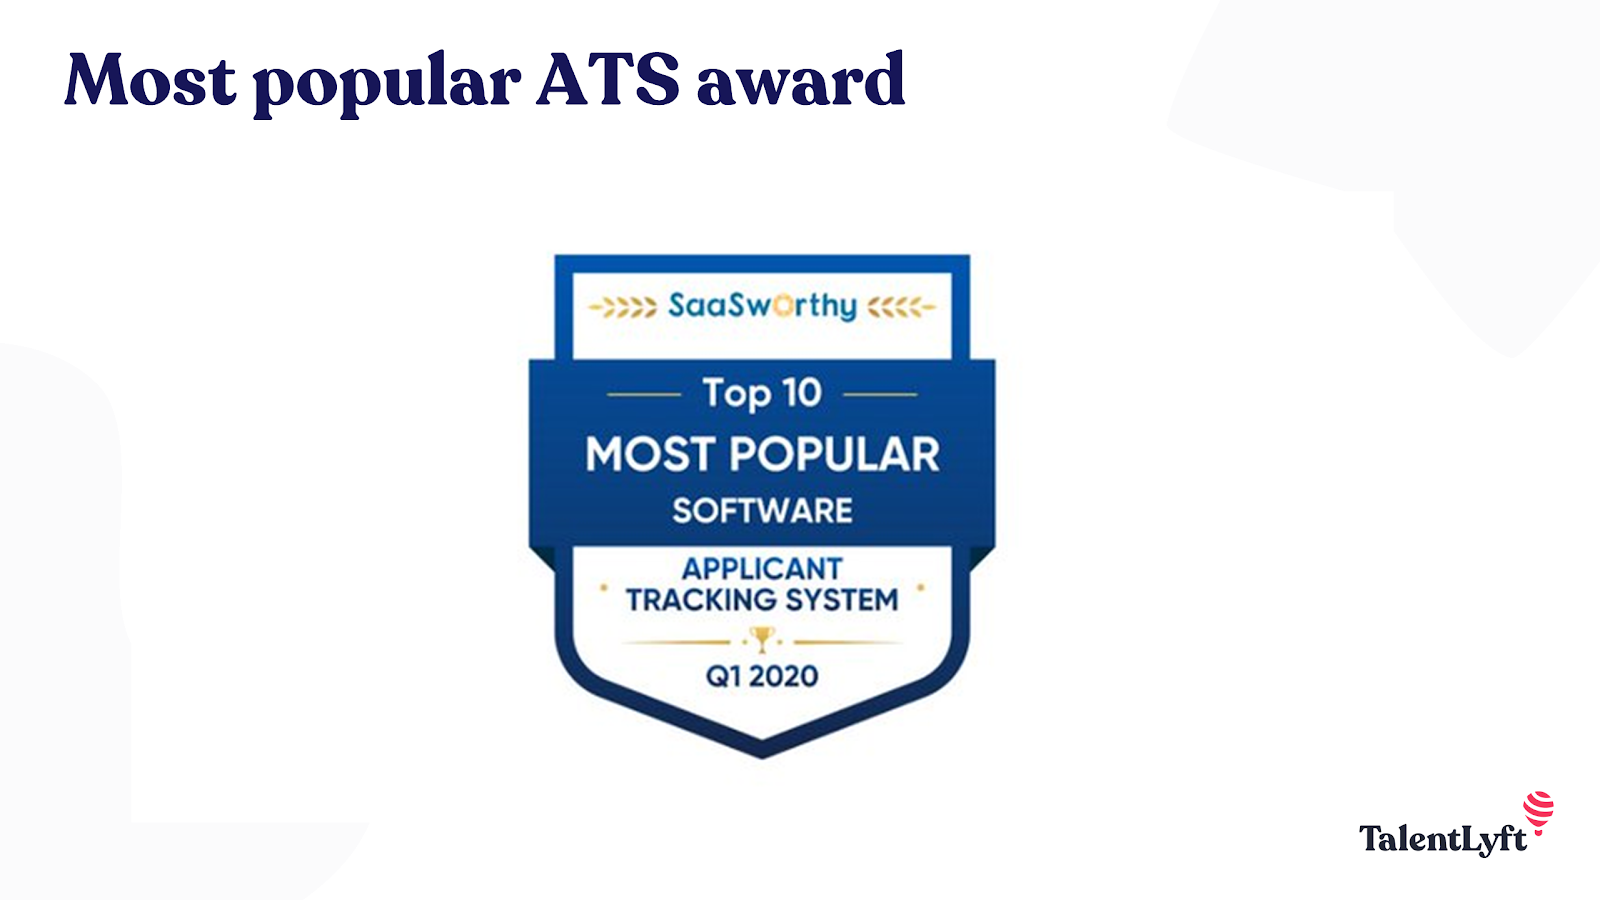 Best Recruitment Software - TalentLyft awards